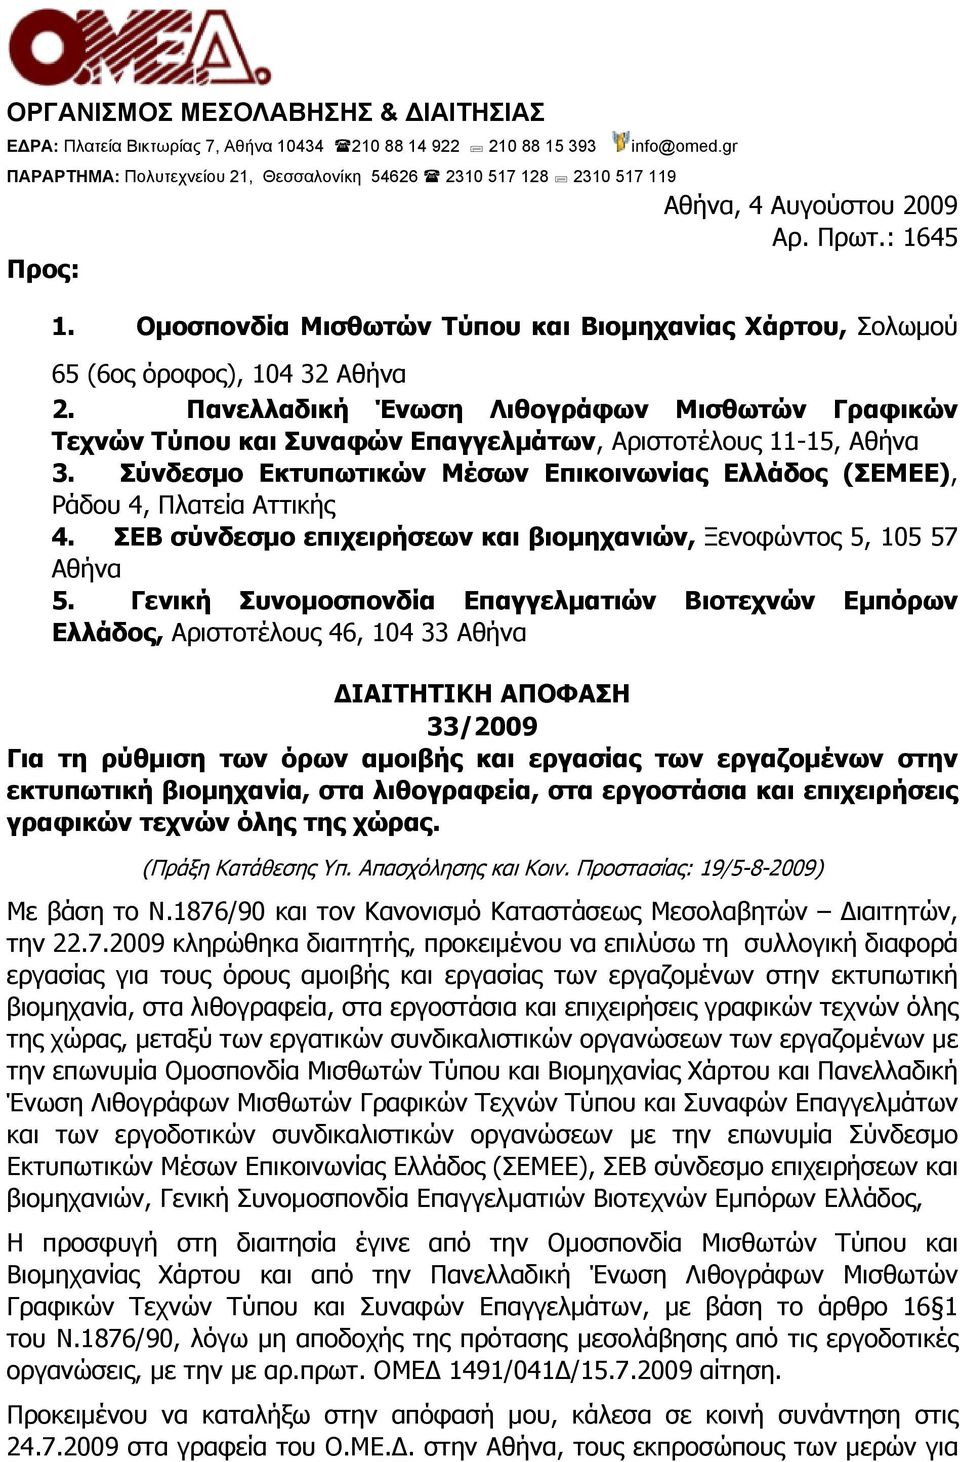 Ομοσπονδία Μισθωτών Τύπου και Βιομηχανίας Χάρτου, Σολωμού 65 (6ος όροφος), 104 32 Αθήνα 2.